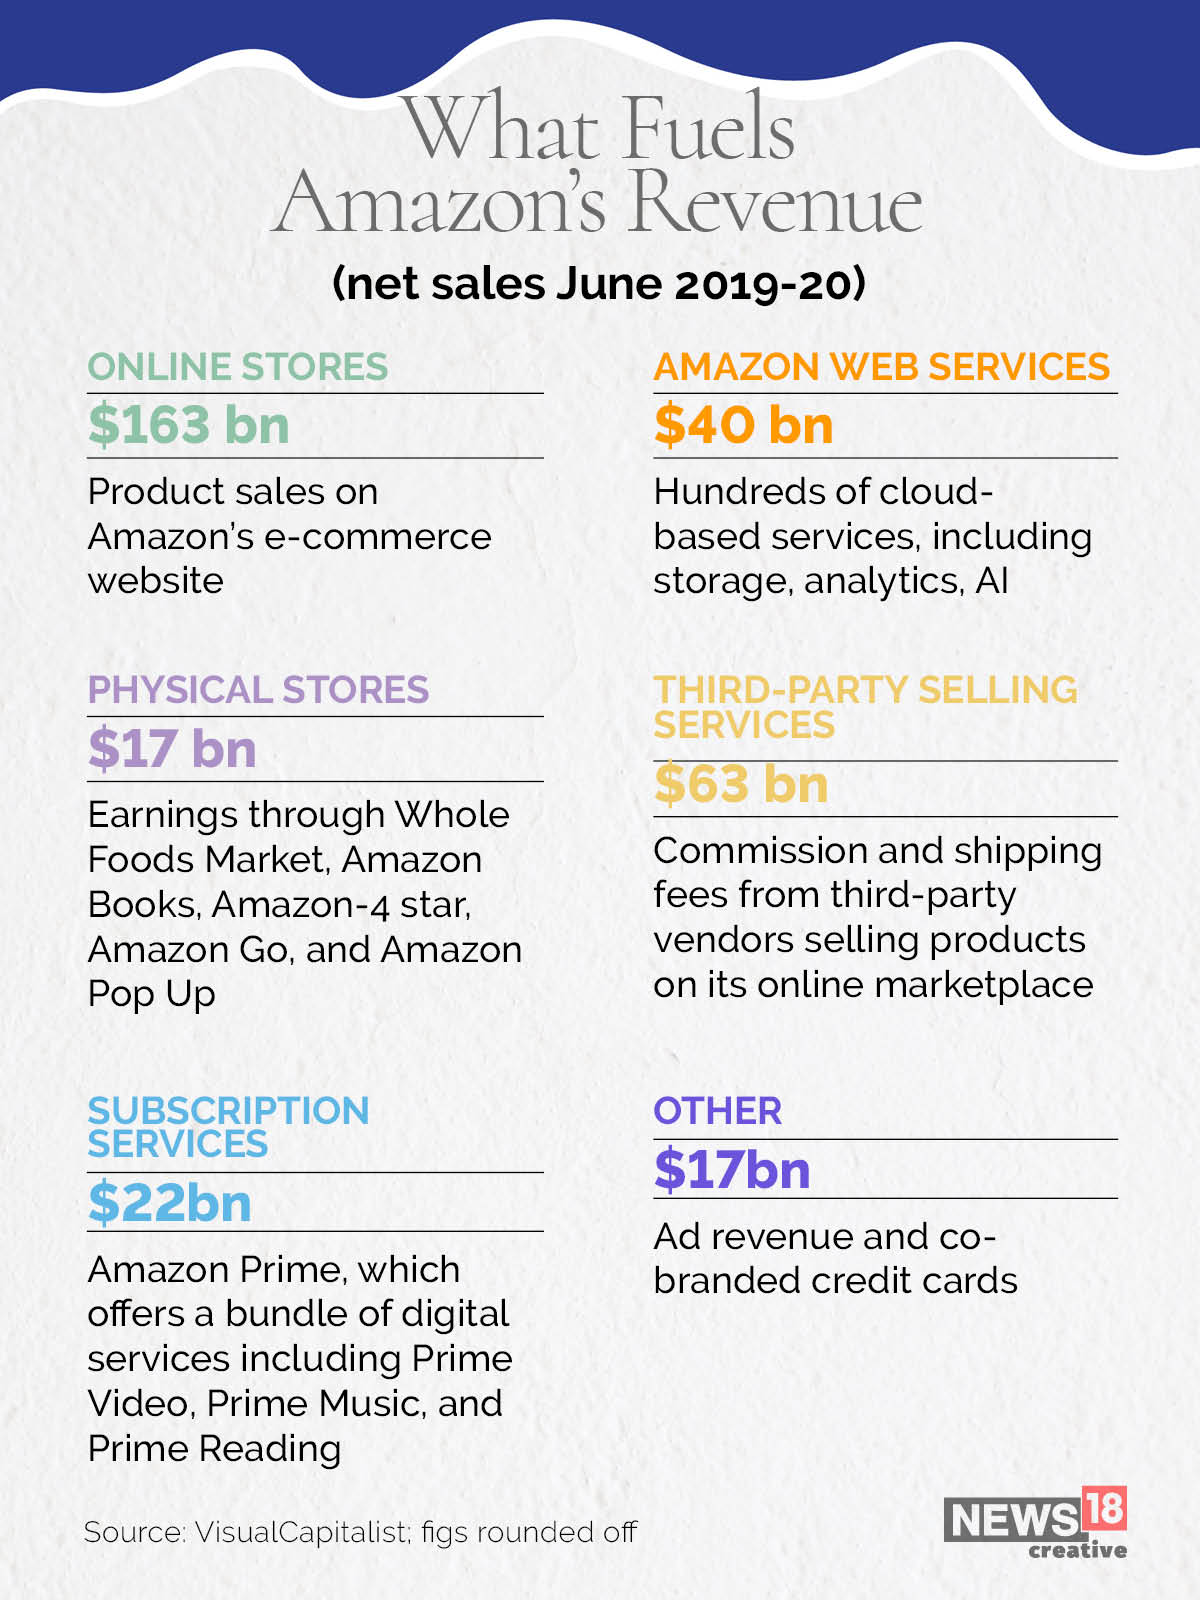 How Amazon makes its money